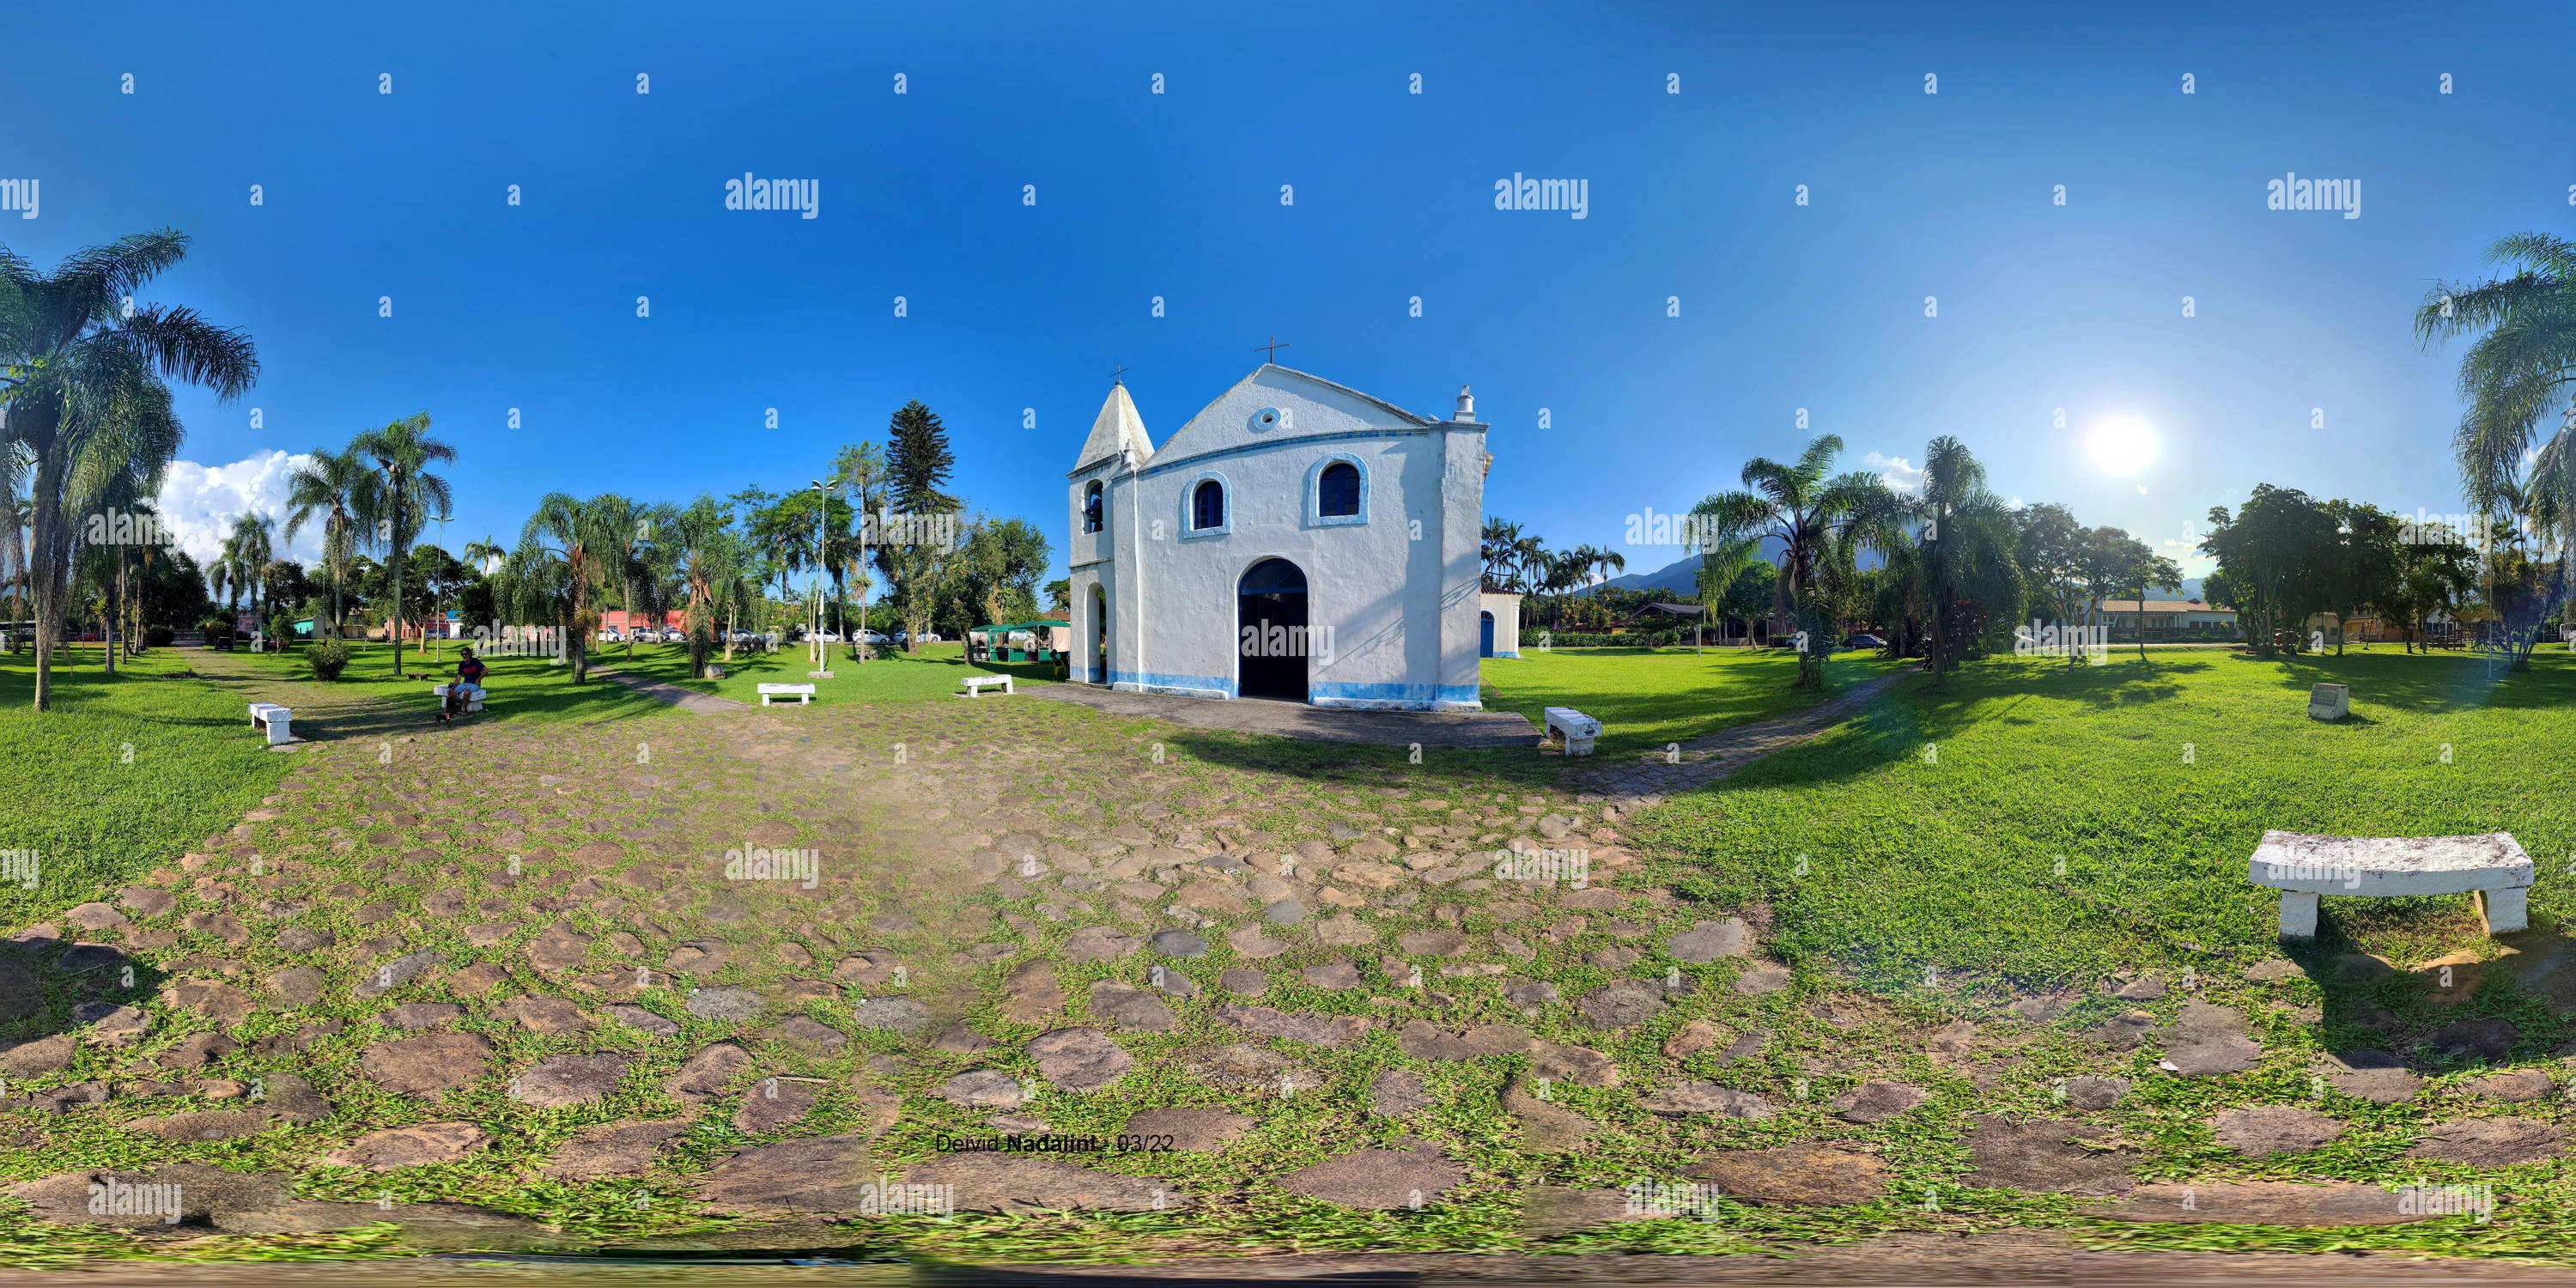 Vista panorámica en 360 grados de Iglesia de São Sebastião, en Morretes, Brasil, en un hermoso día soleado.